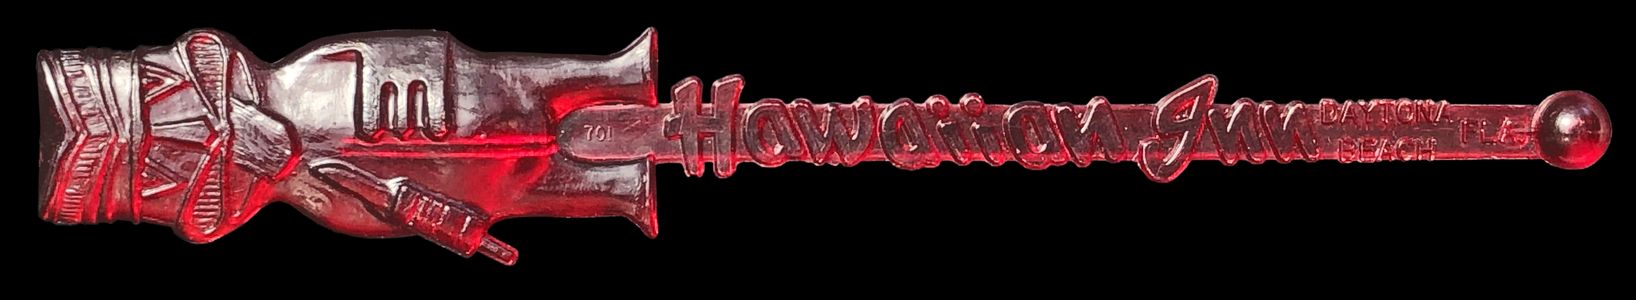 Hawaiian Inn Knife Licker Red1 F